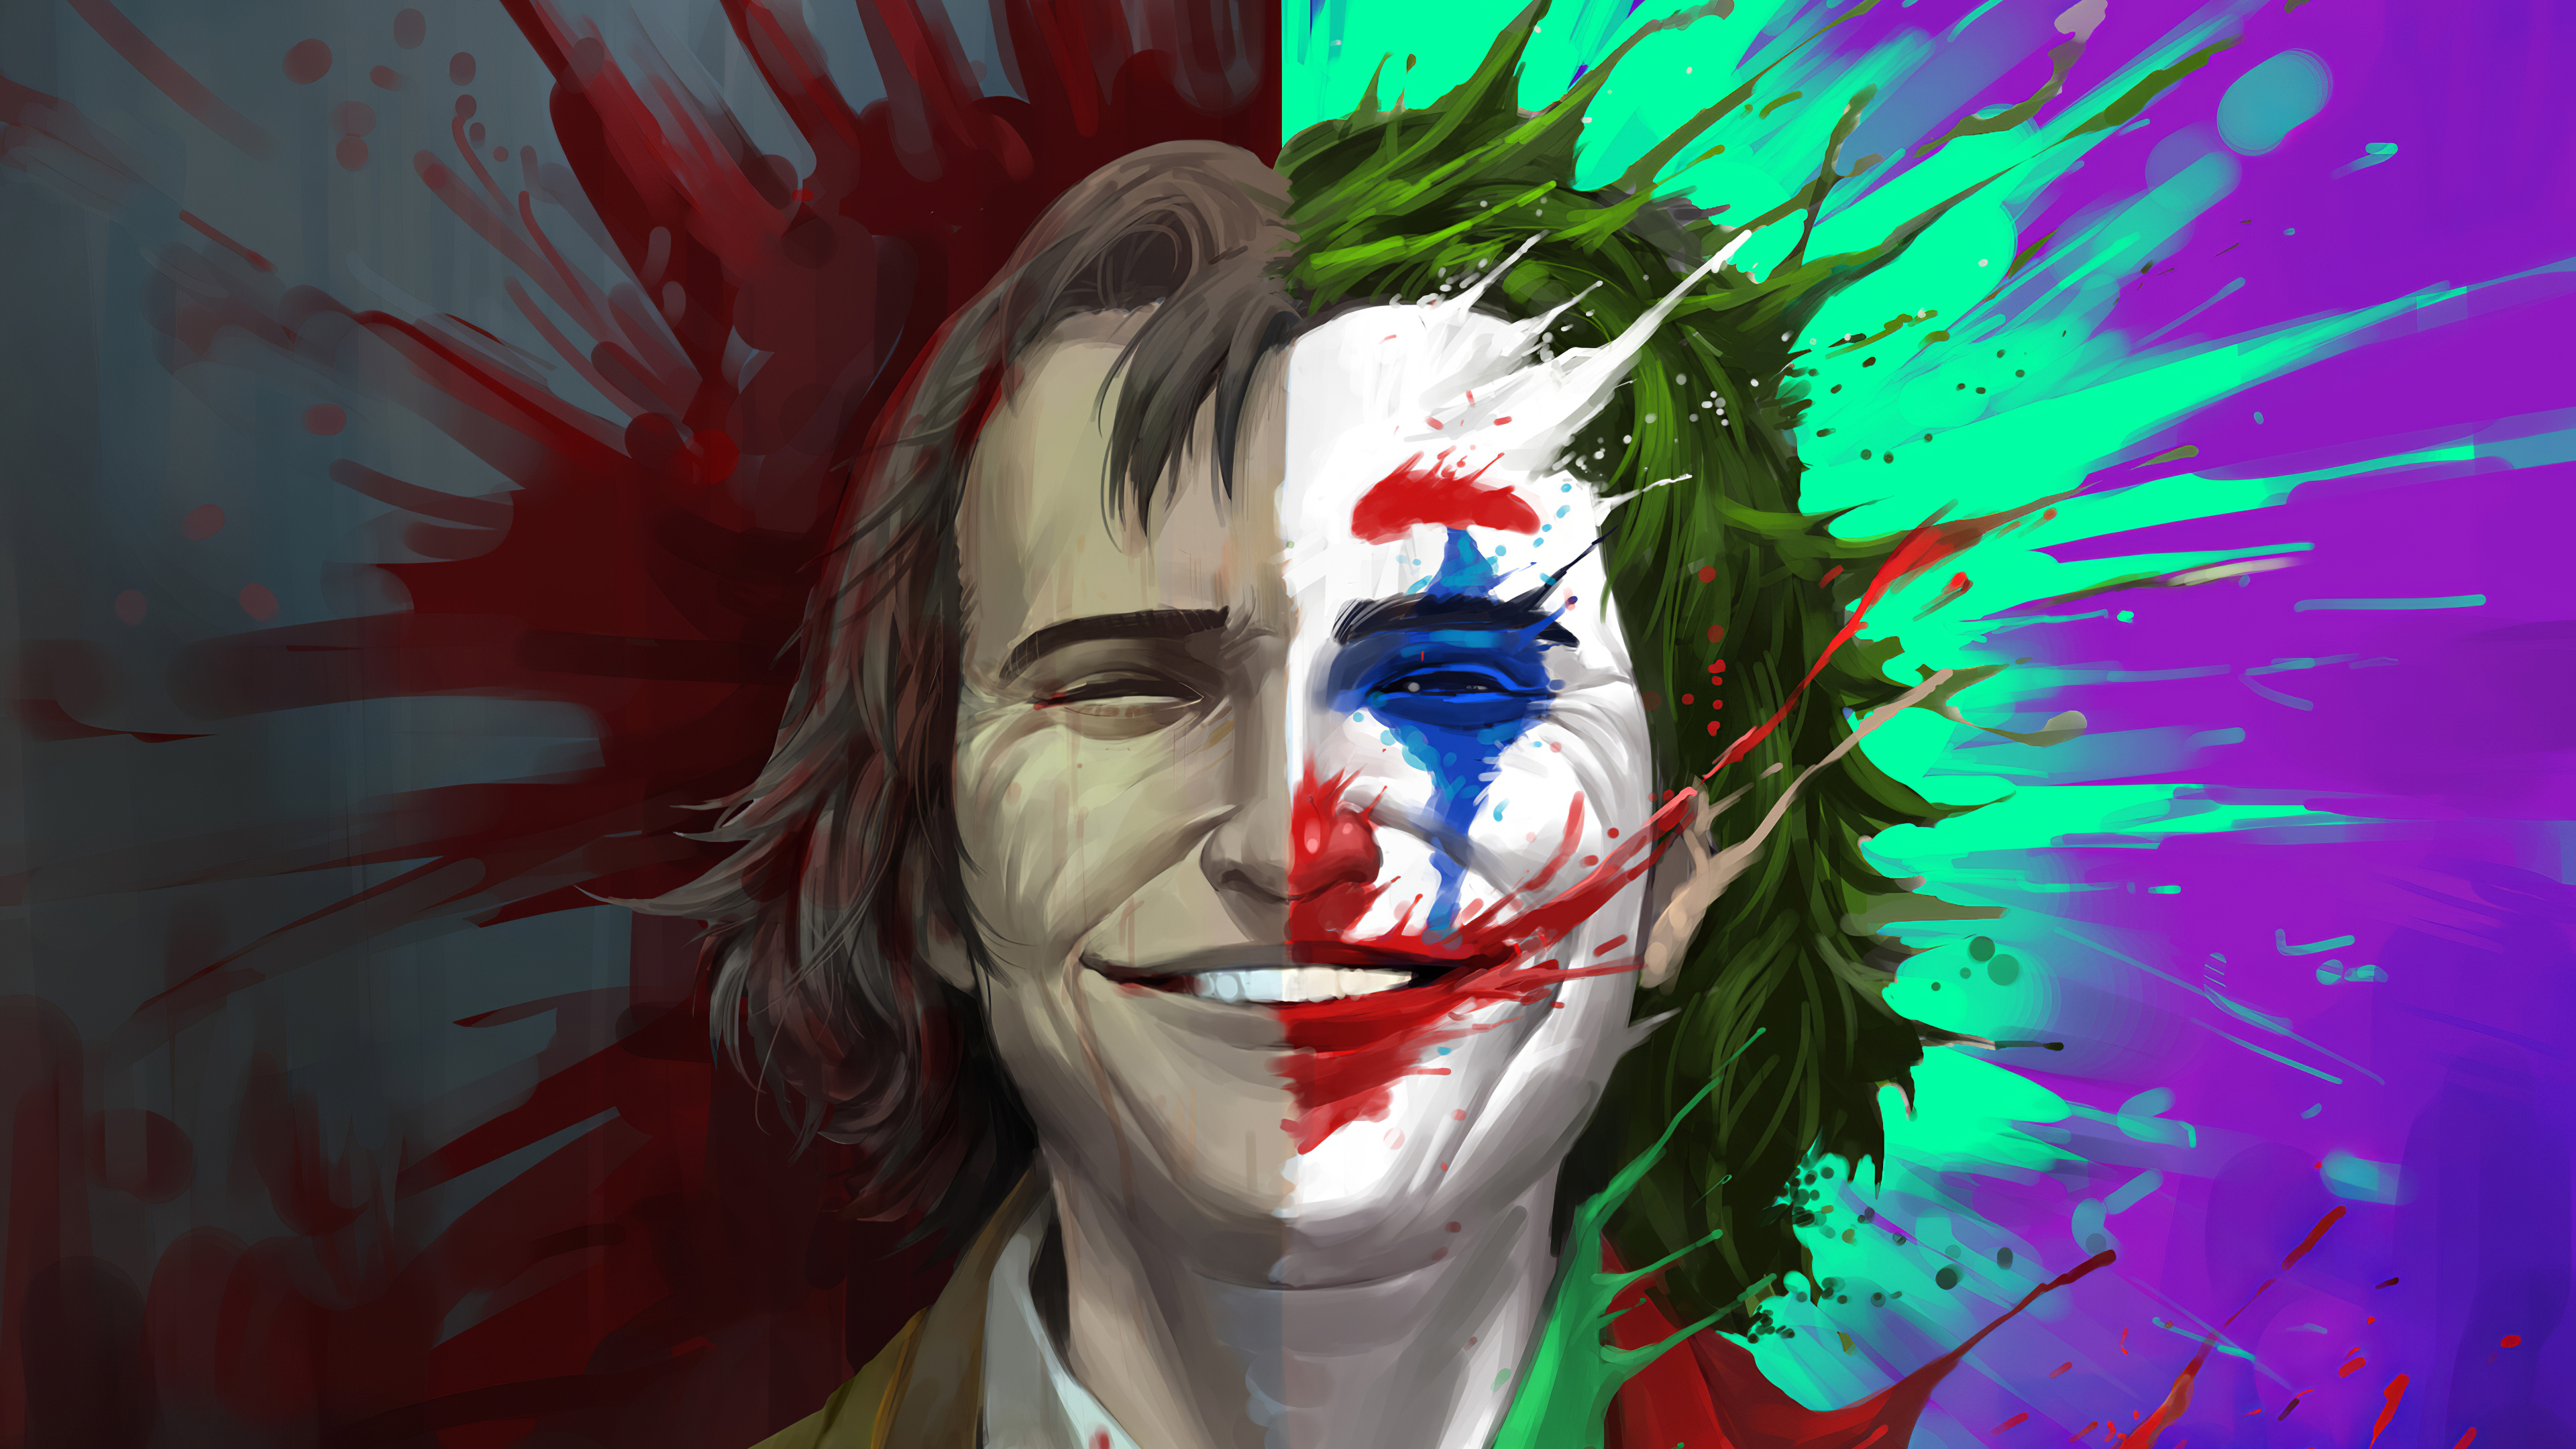 Wallpaper 4k Arthur Fleck Vs Joker 2019 Movies Wallpapers 4k